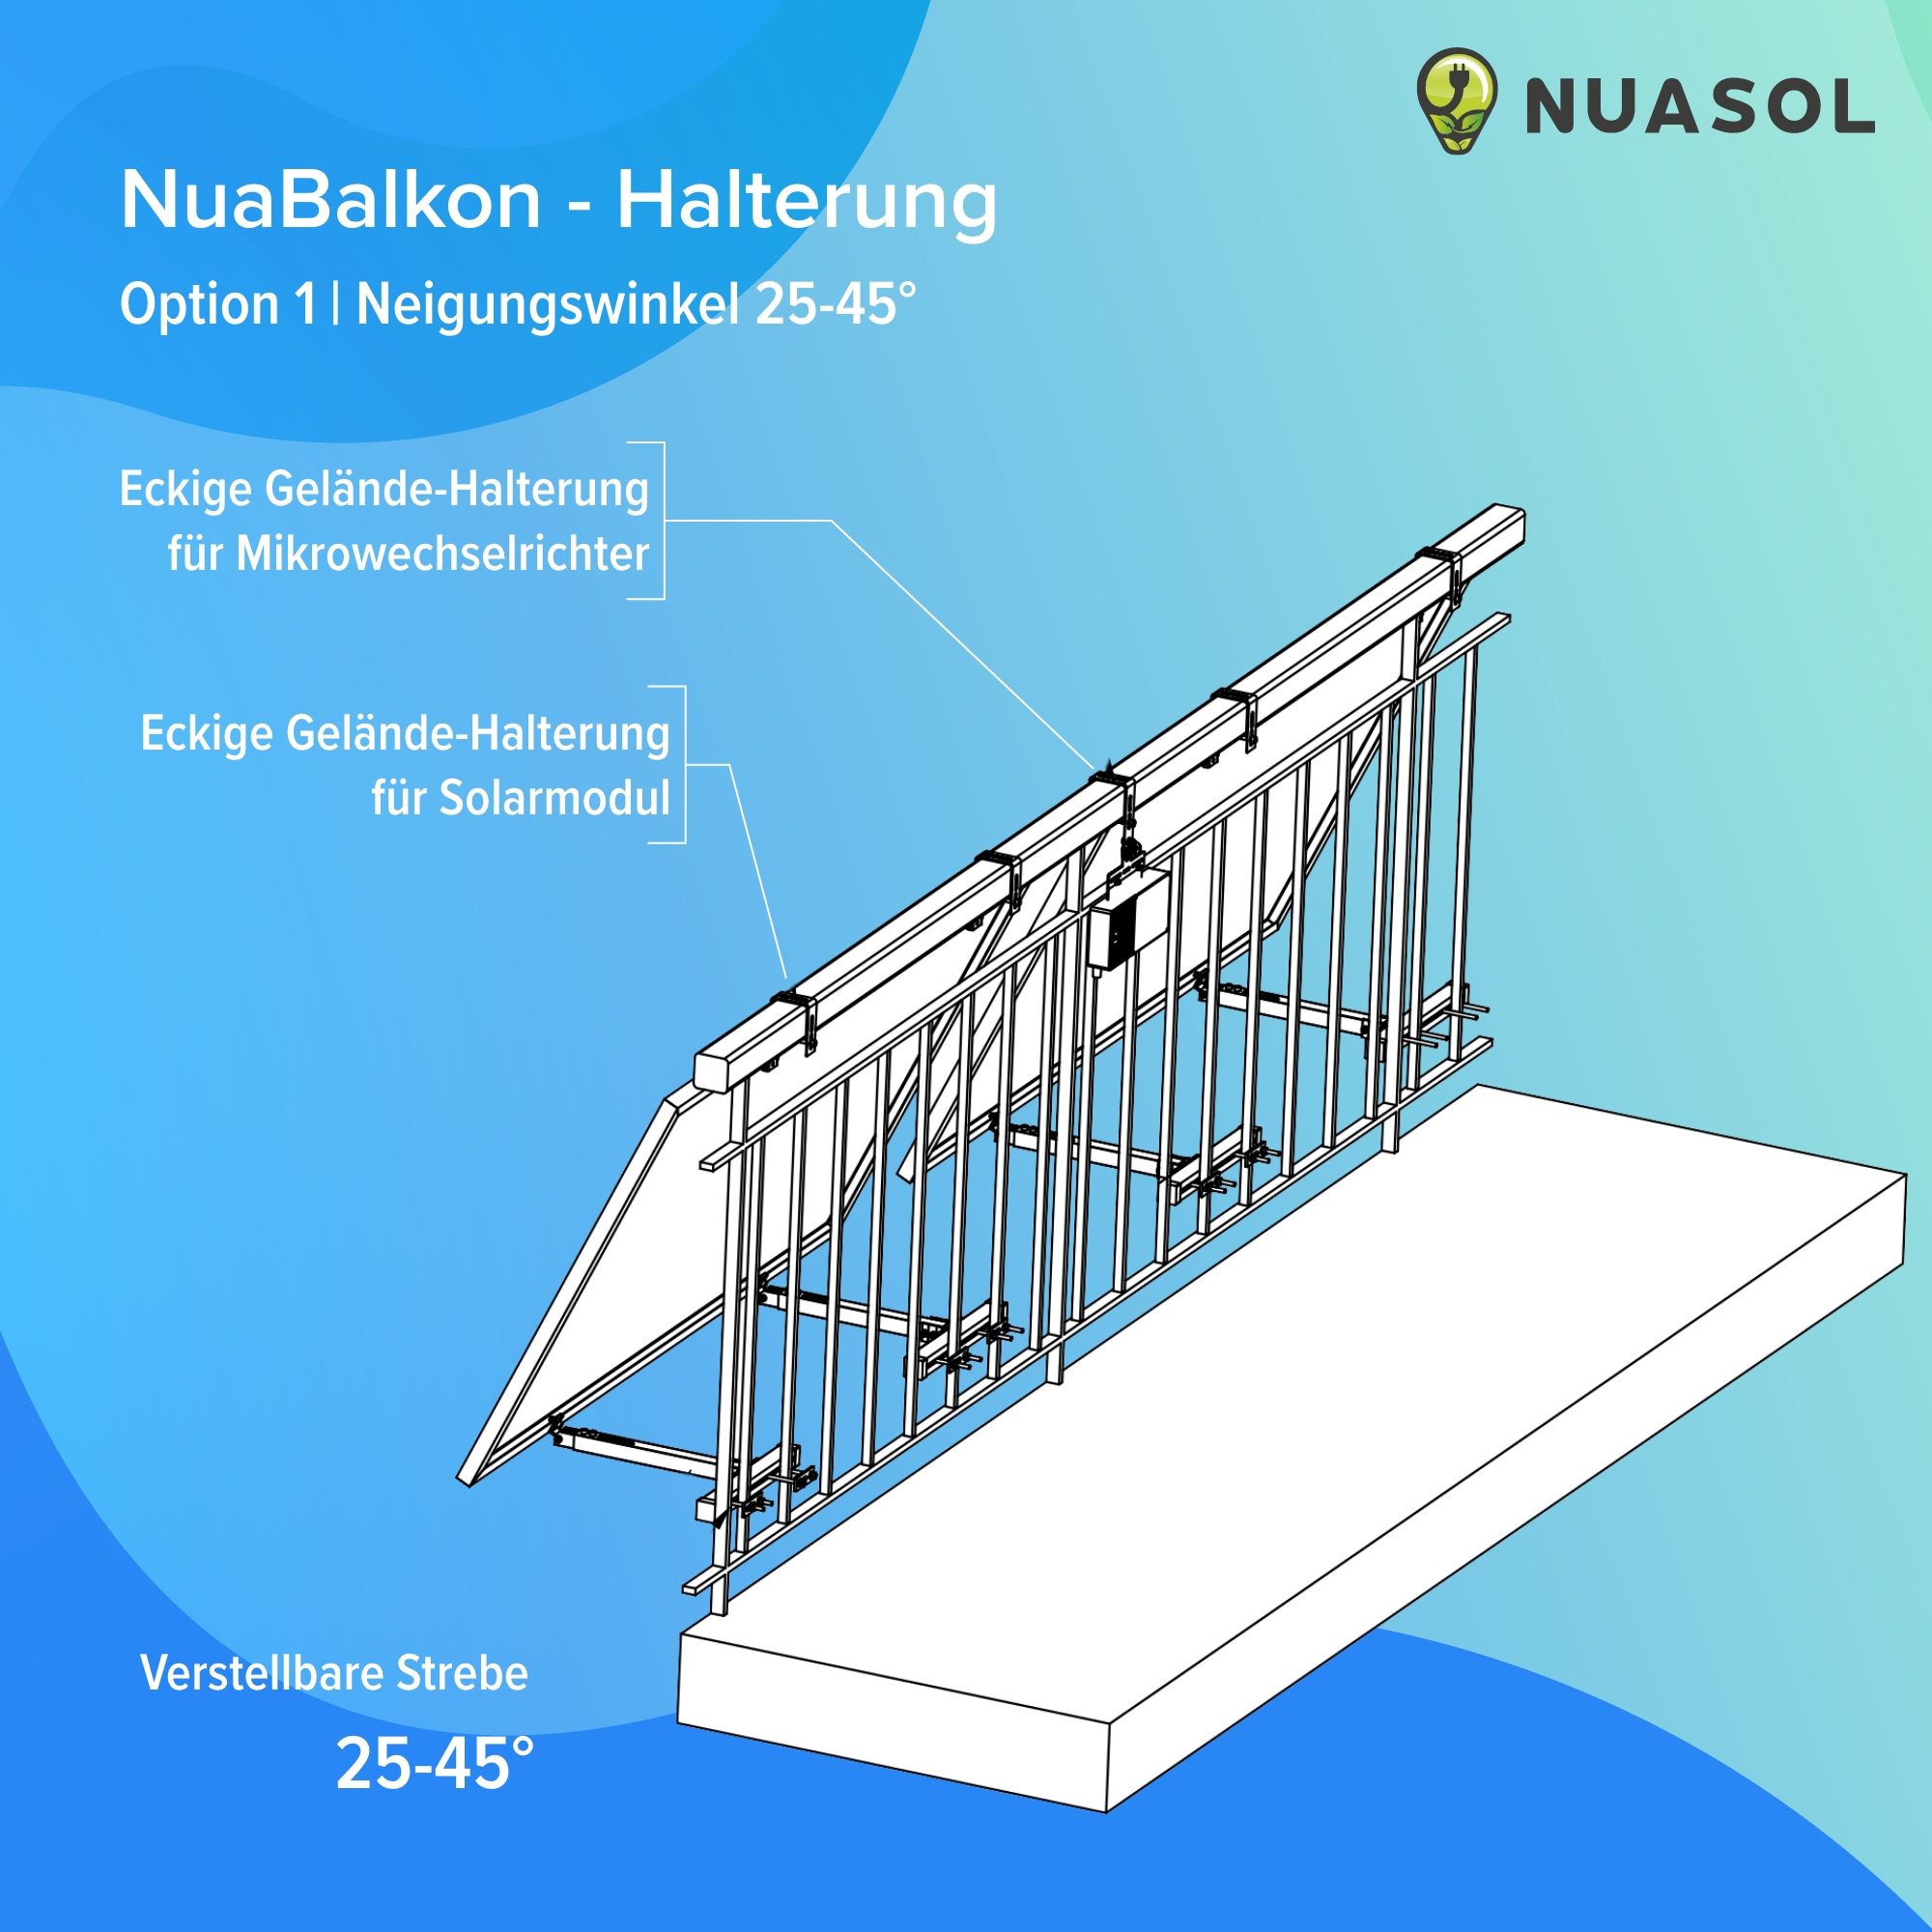 NuaSol - Balkongelände Halterung eckig für 2 Solarmodue - 4252023111966 -  Halterungen